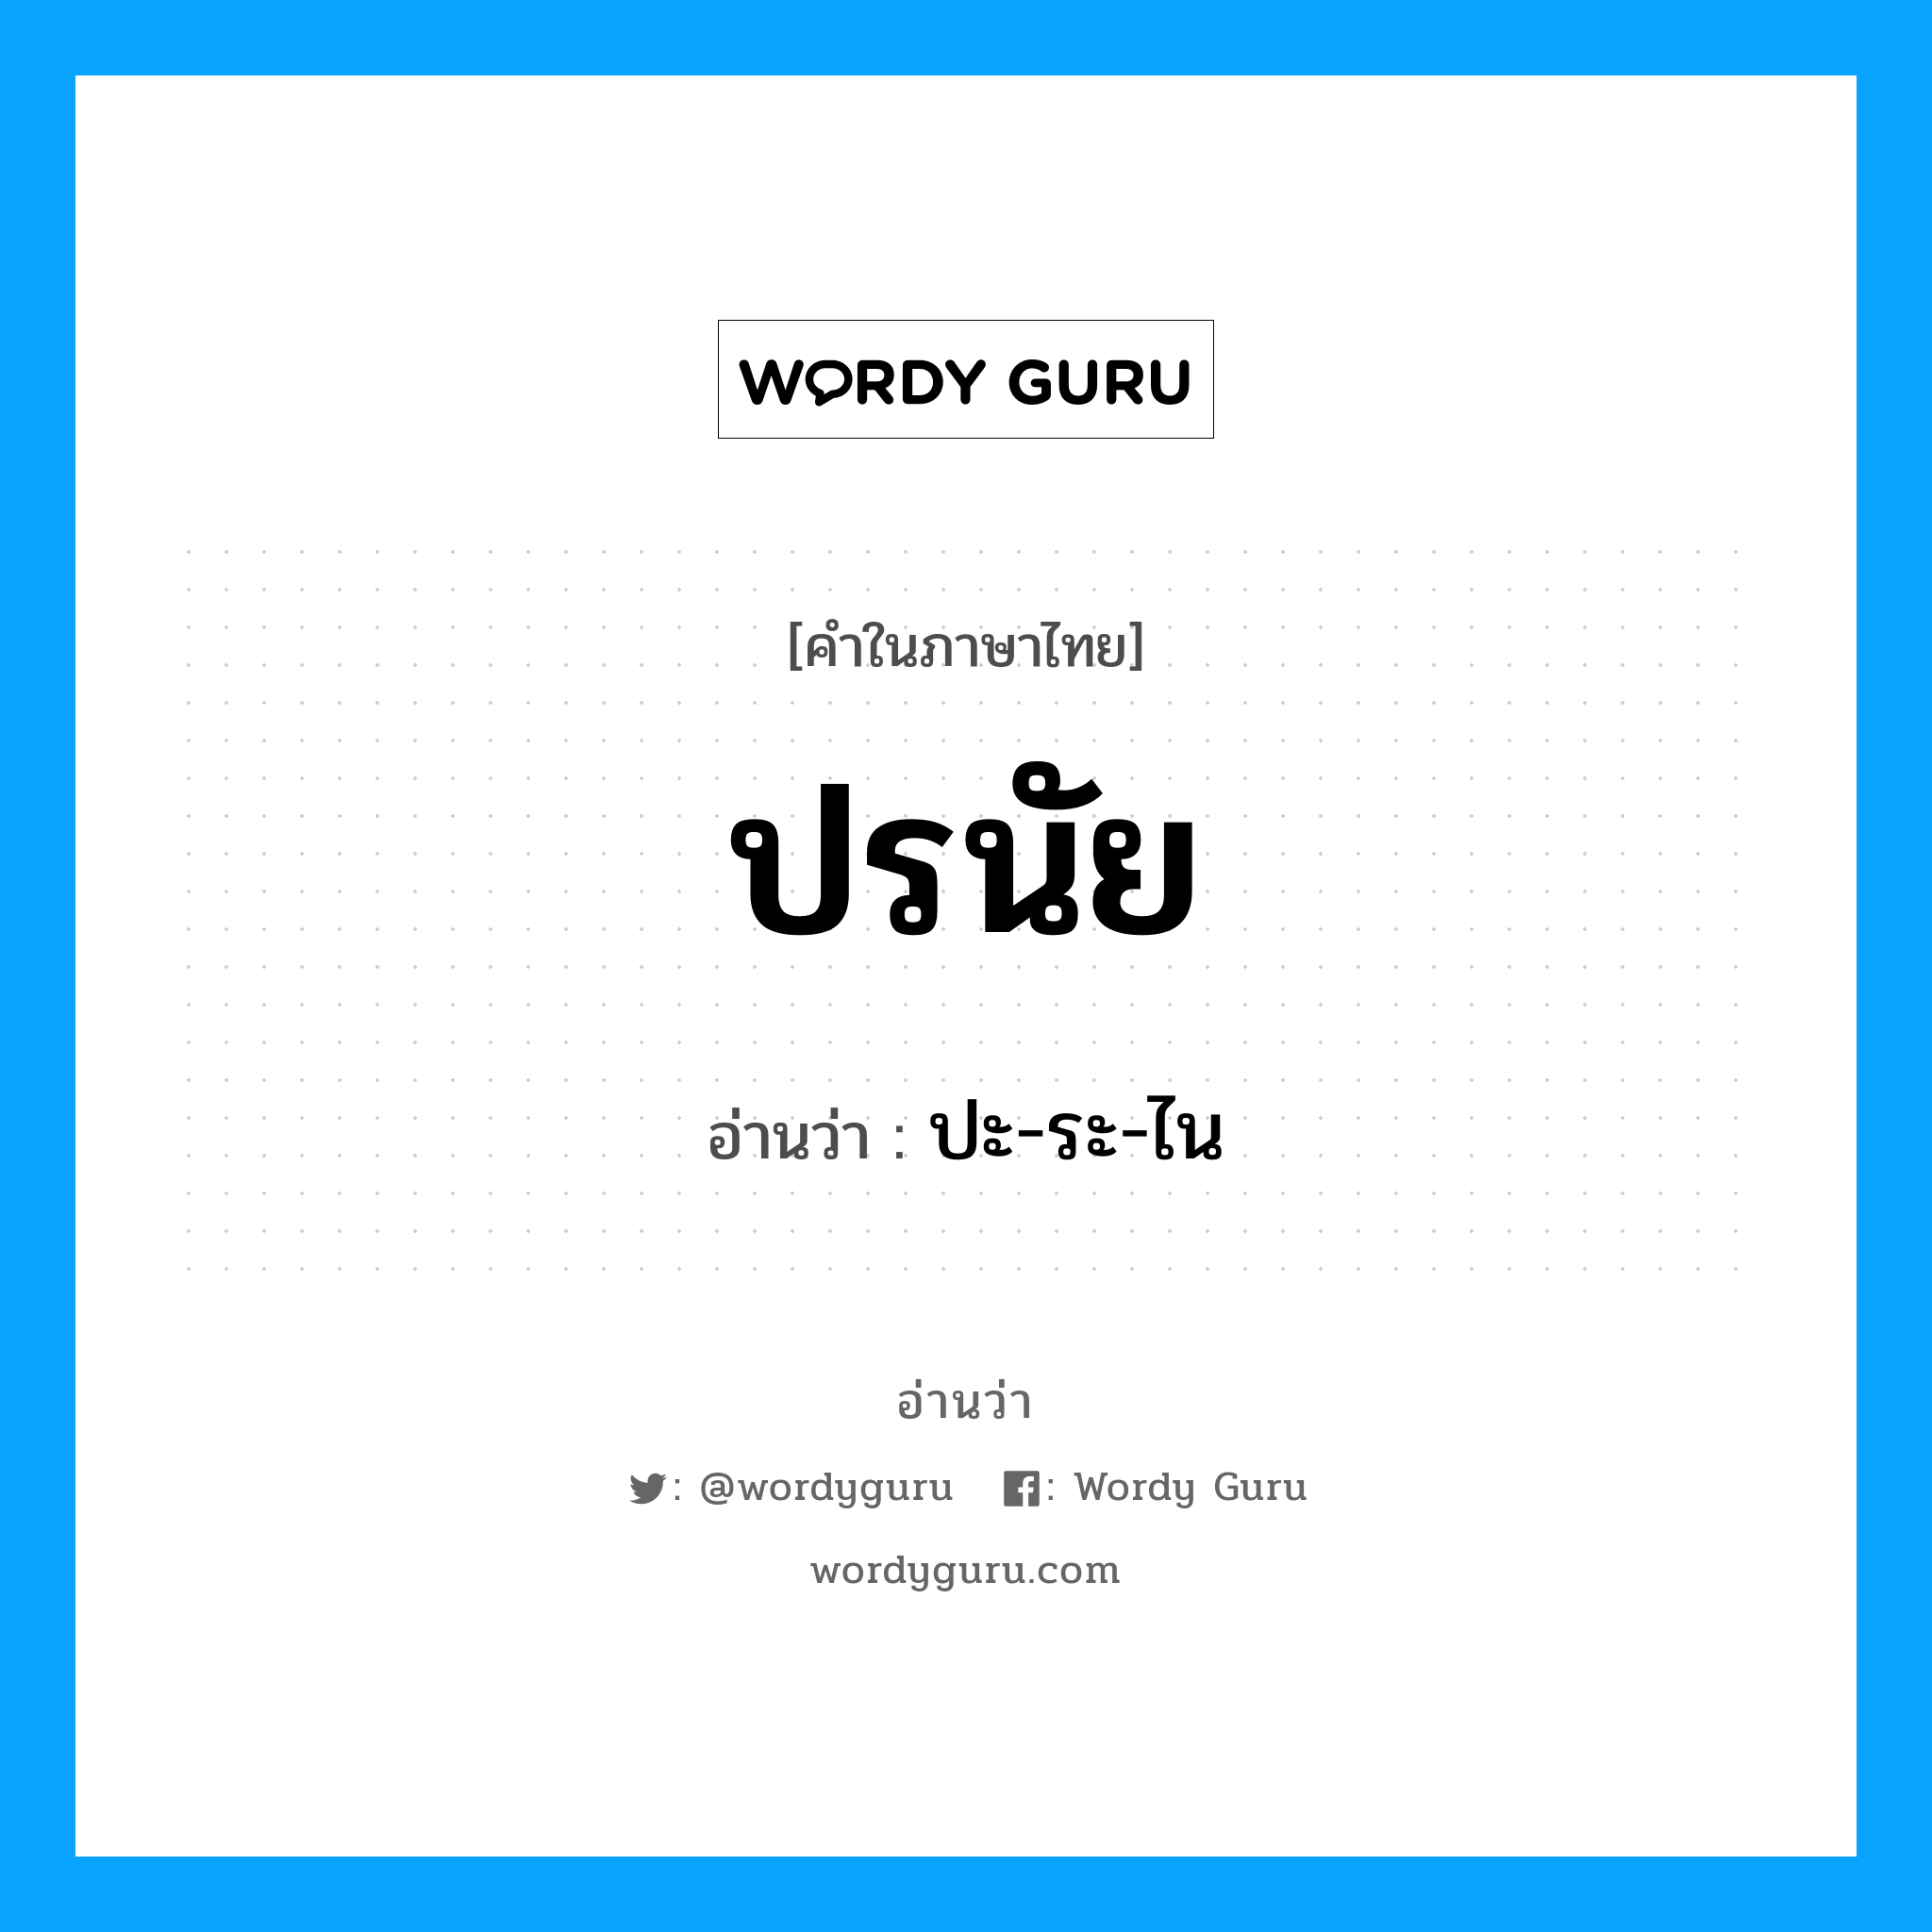 ปะ-ระ-ไน เป็นคำอ่านของคำไหน?, คำในภาษาไทย ปะ-ระ-ไน อ่านว่า ปรนัย